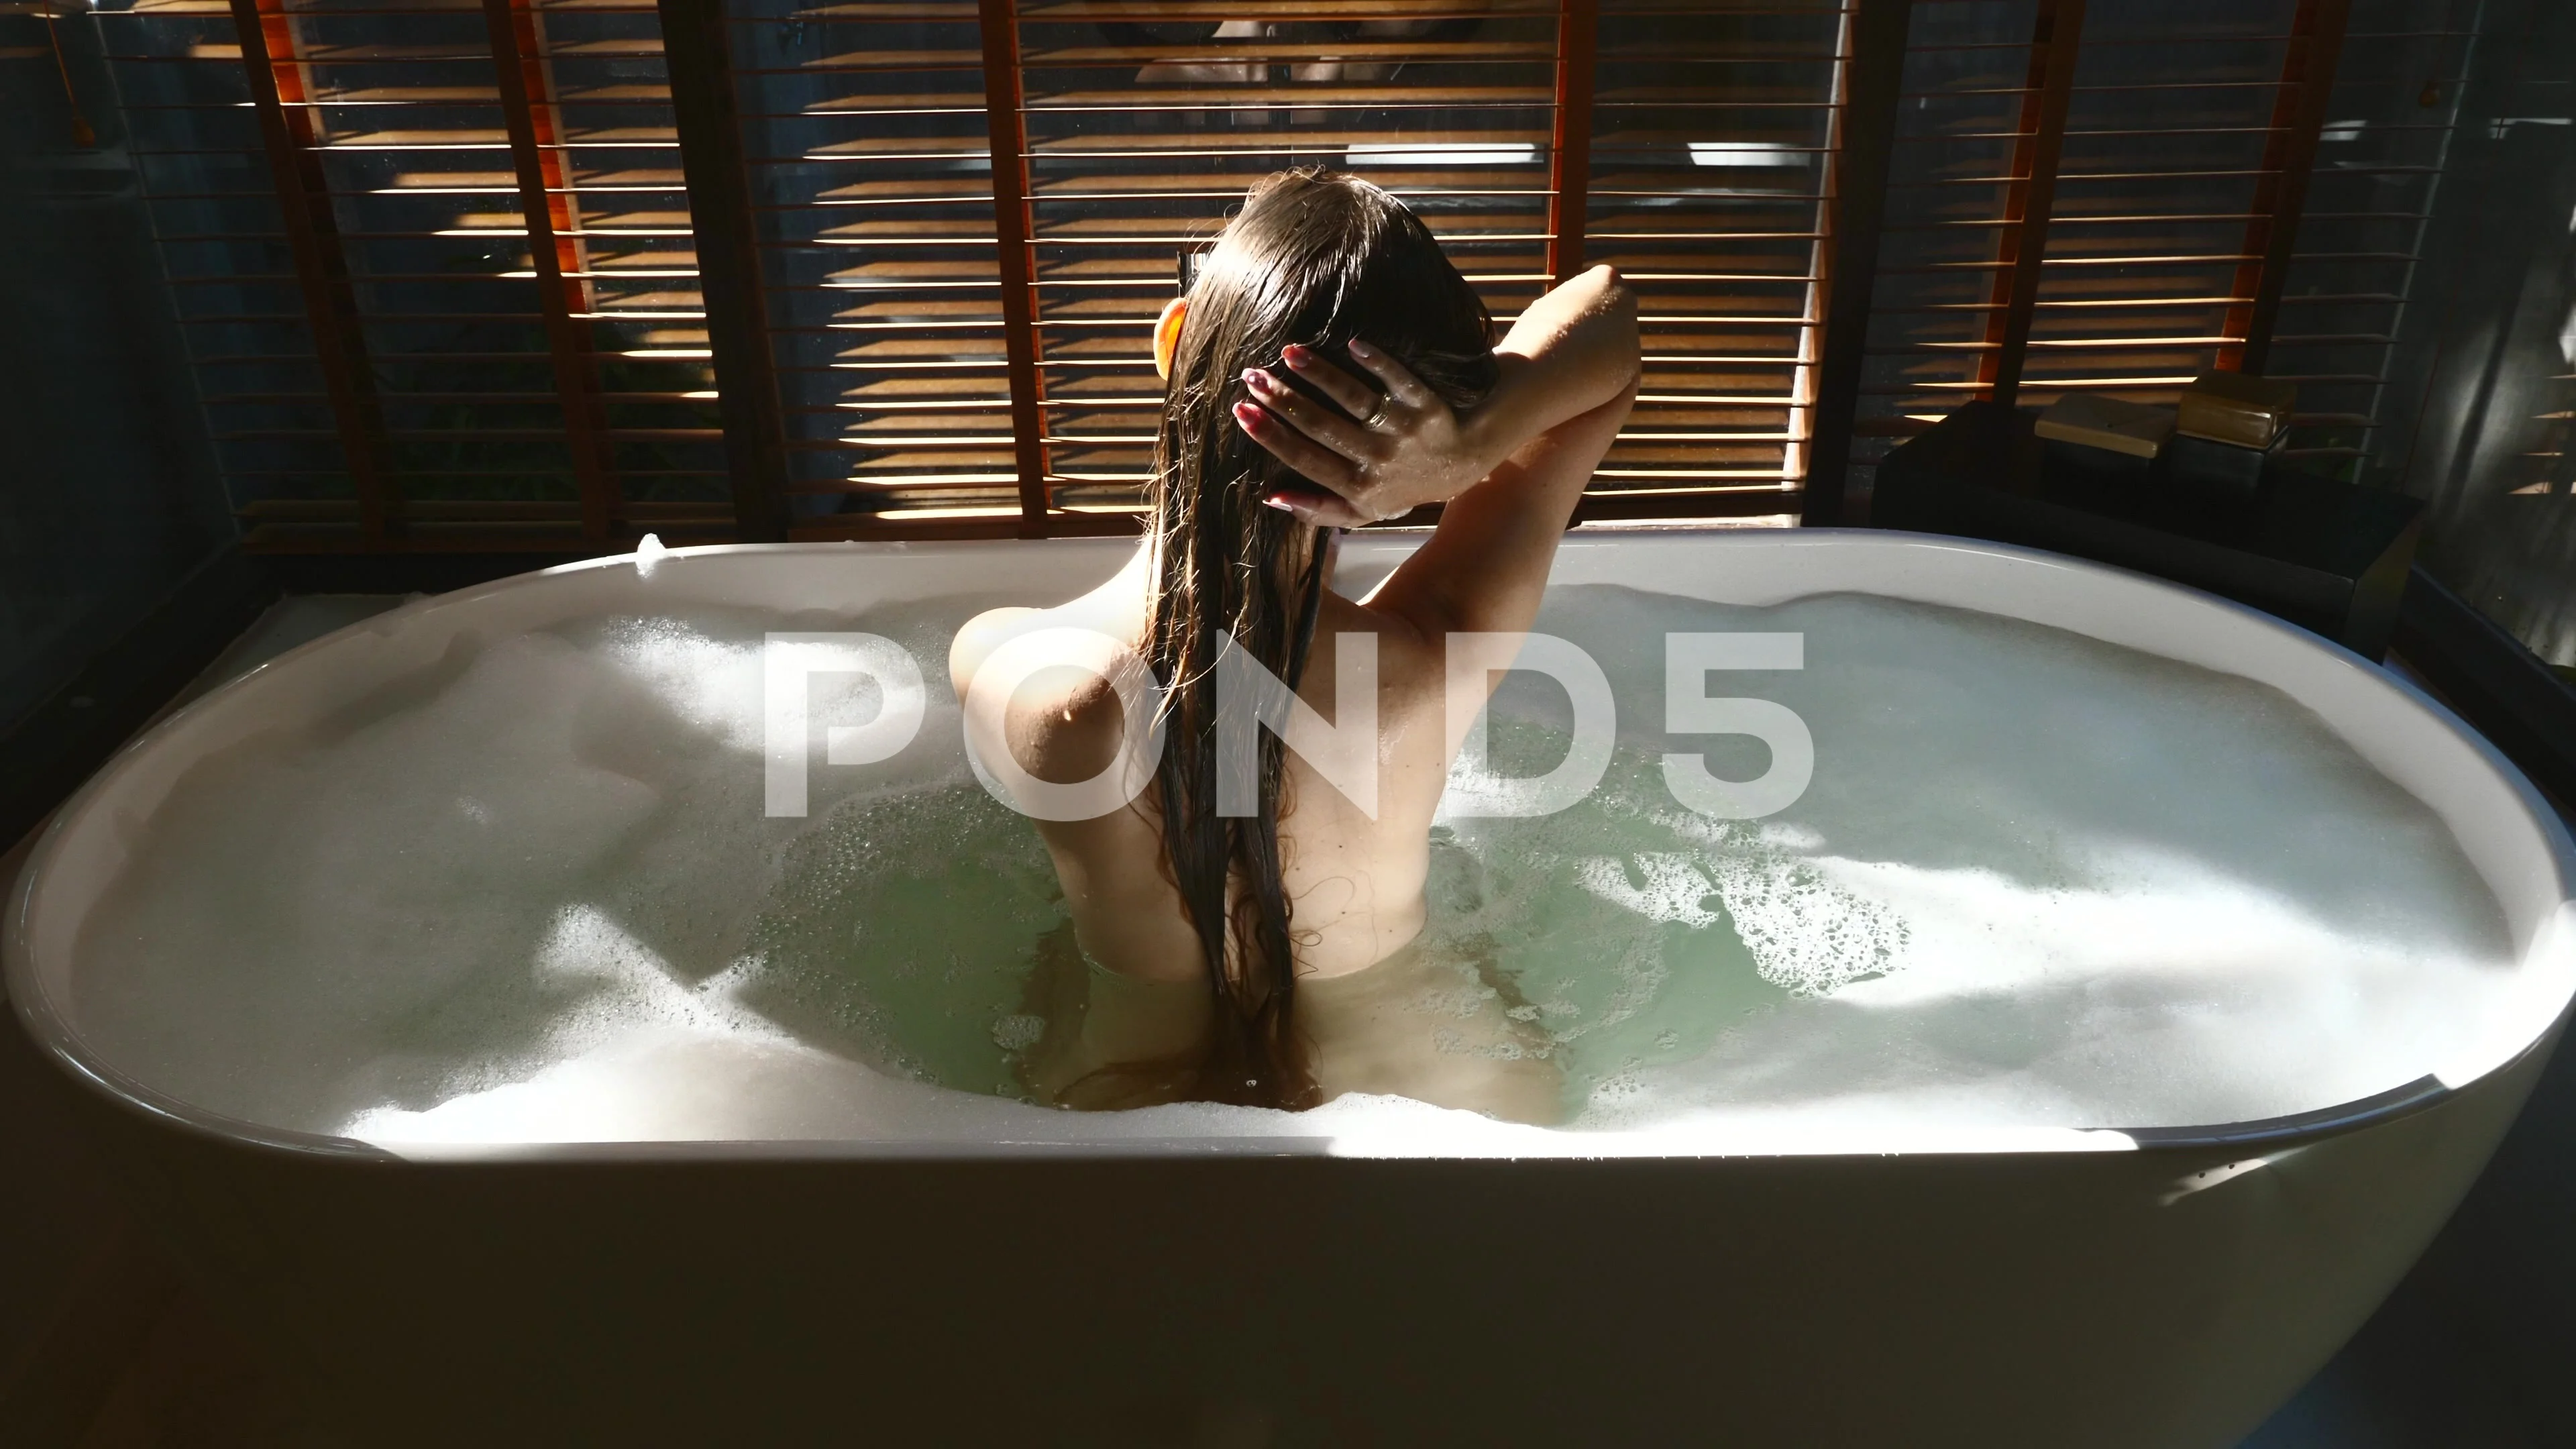 corinna butler share sexy bath tub pics photos